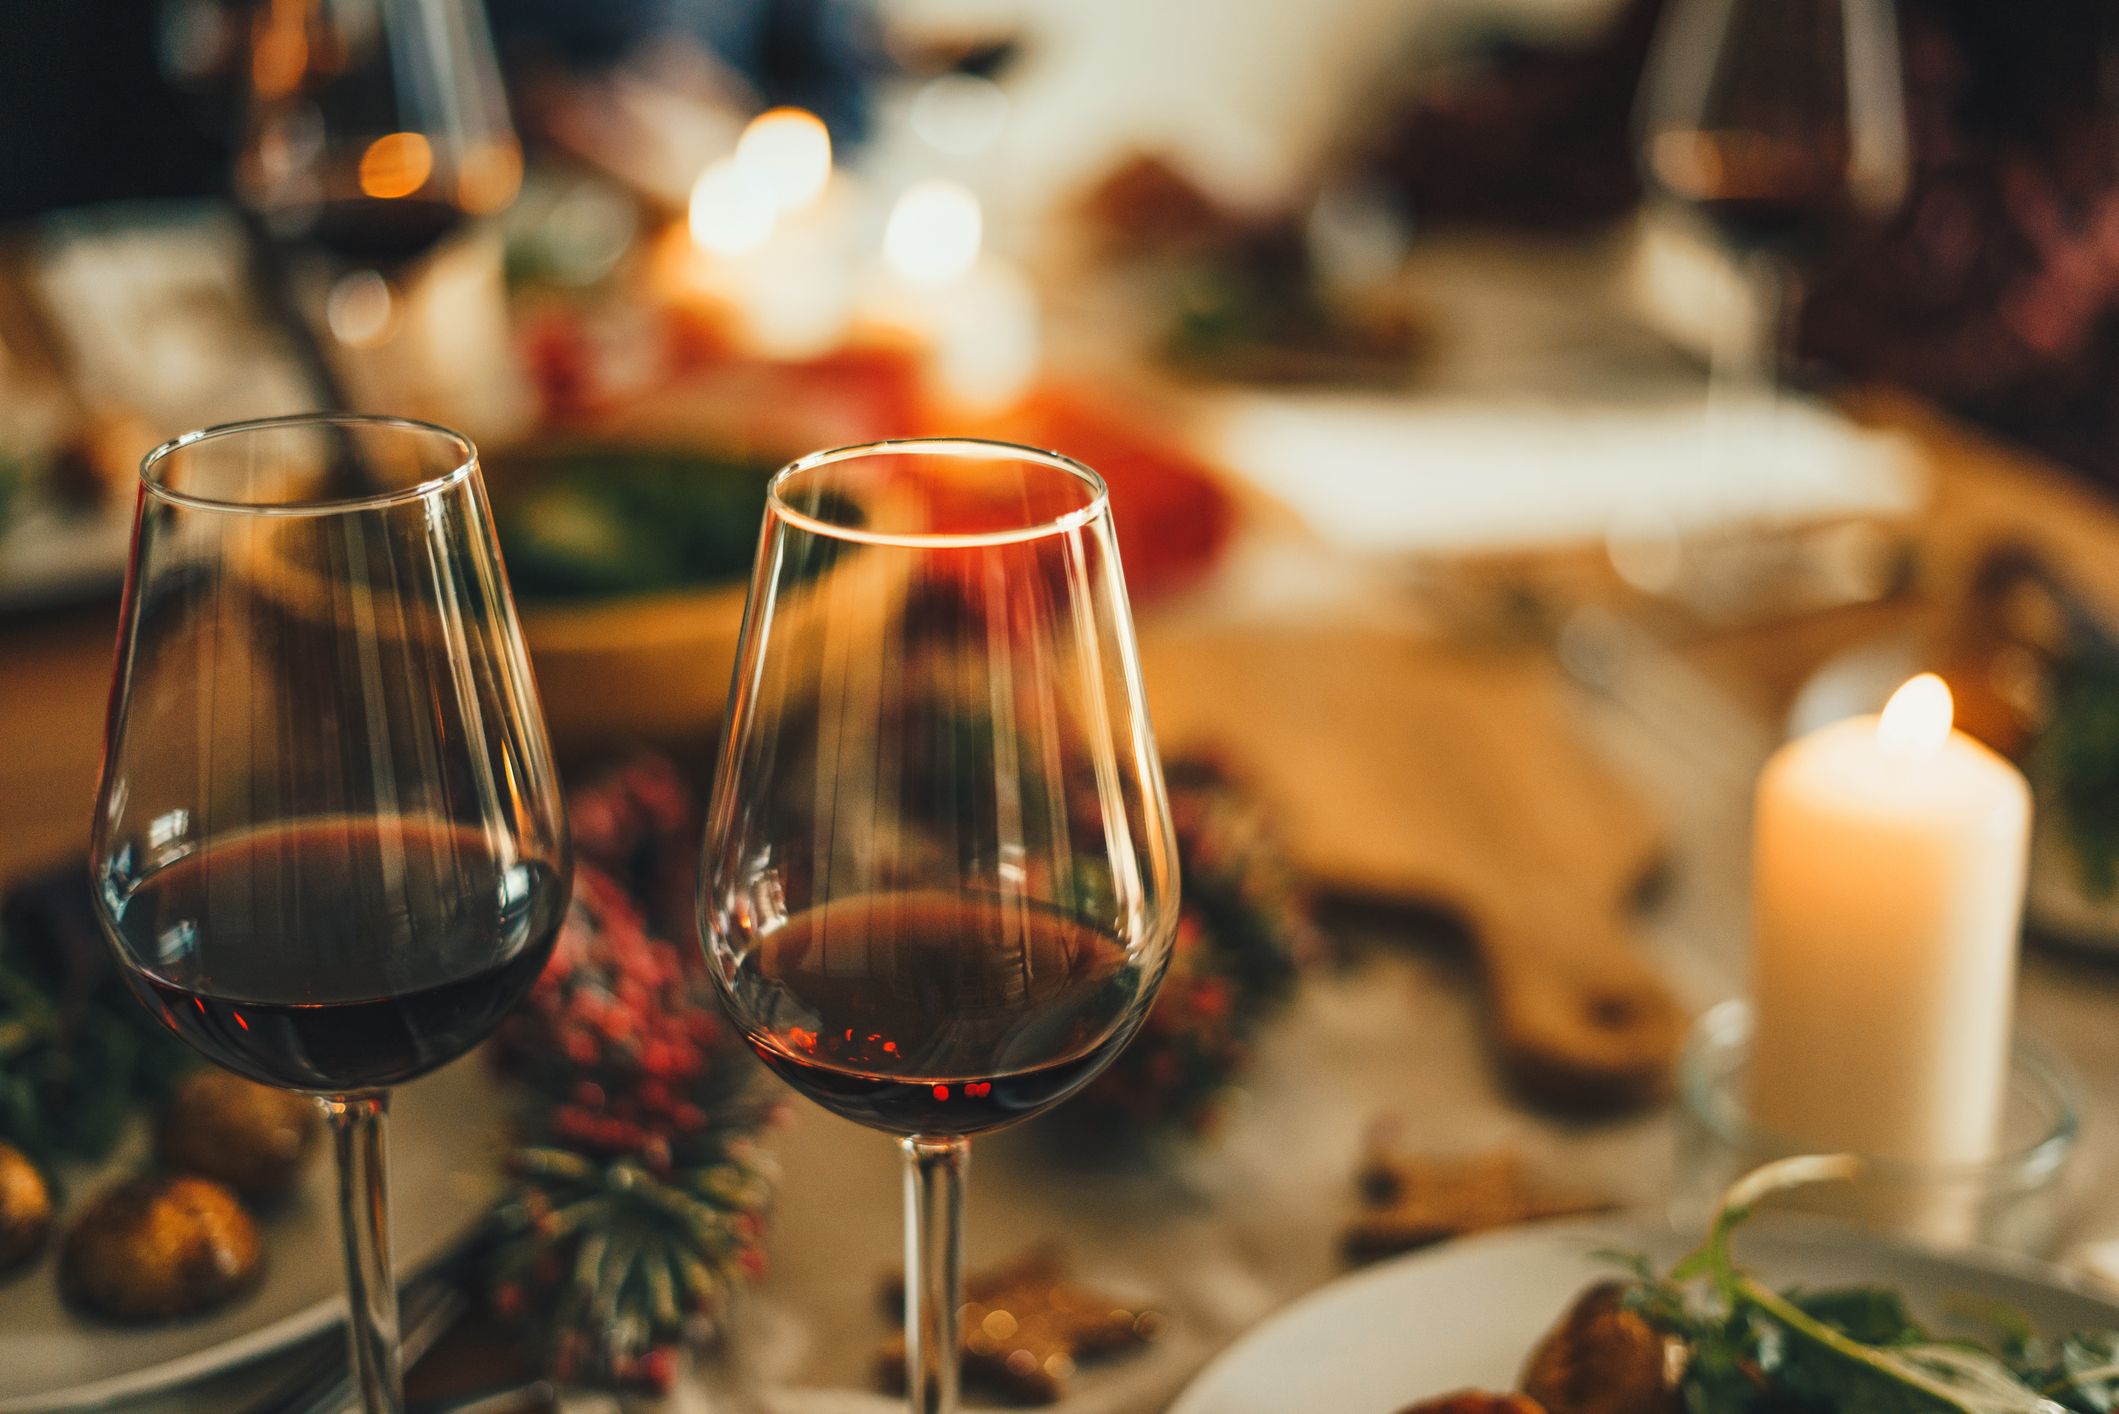 Deux verres à vin dans un décor de dîner éclairé à la bougie. | Source : Getty Images